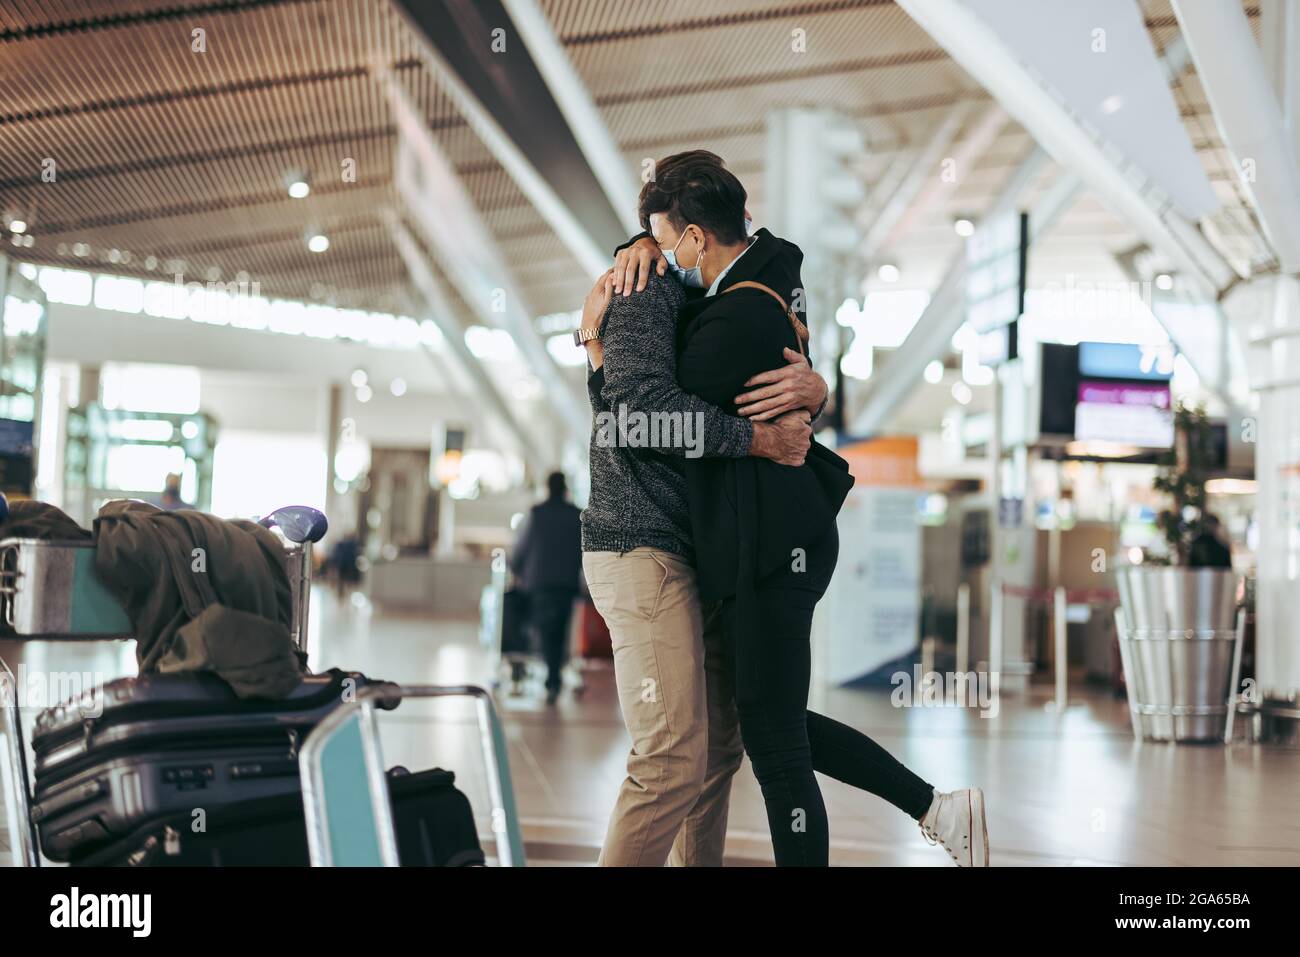 Liebevolles Paar, das sich während des Treffens am Flughafen umarmte, nachdem der Mann von der Reise zurückkehrte. Frau umarmte Mann nach der Ankunft von Reise während einer Pandemie. Stockfoto